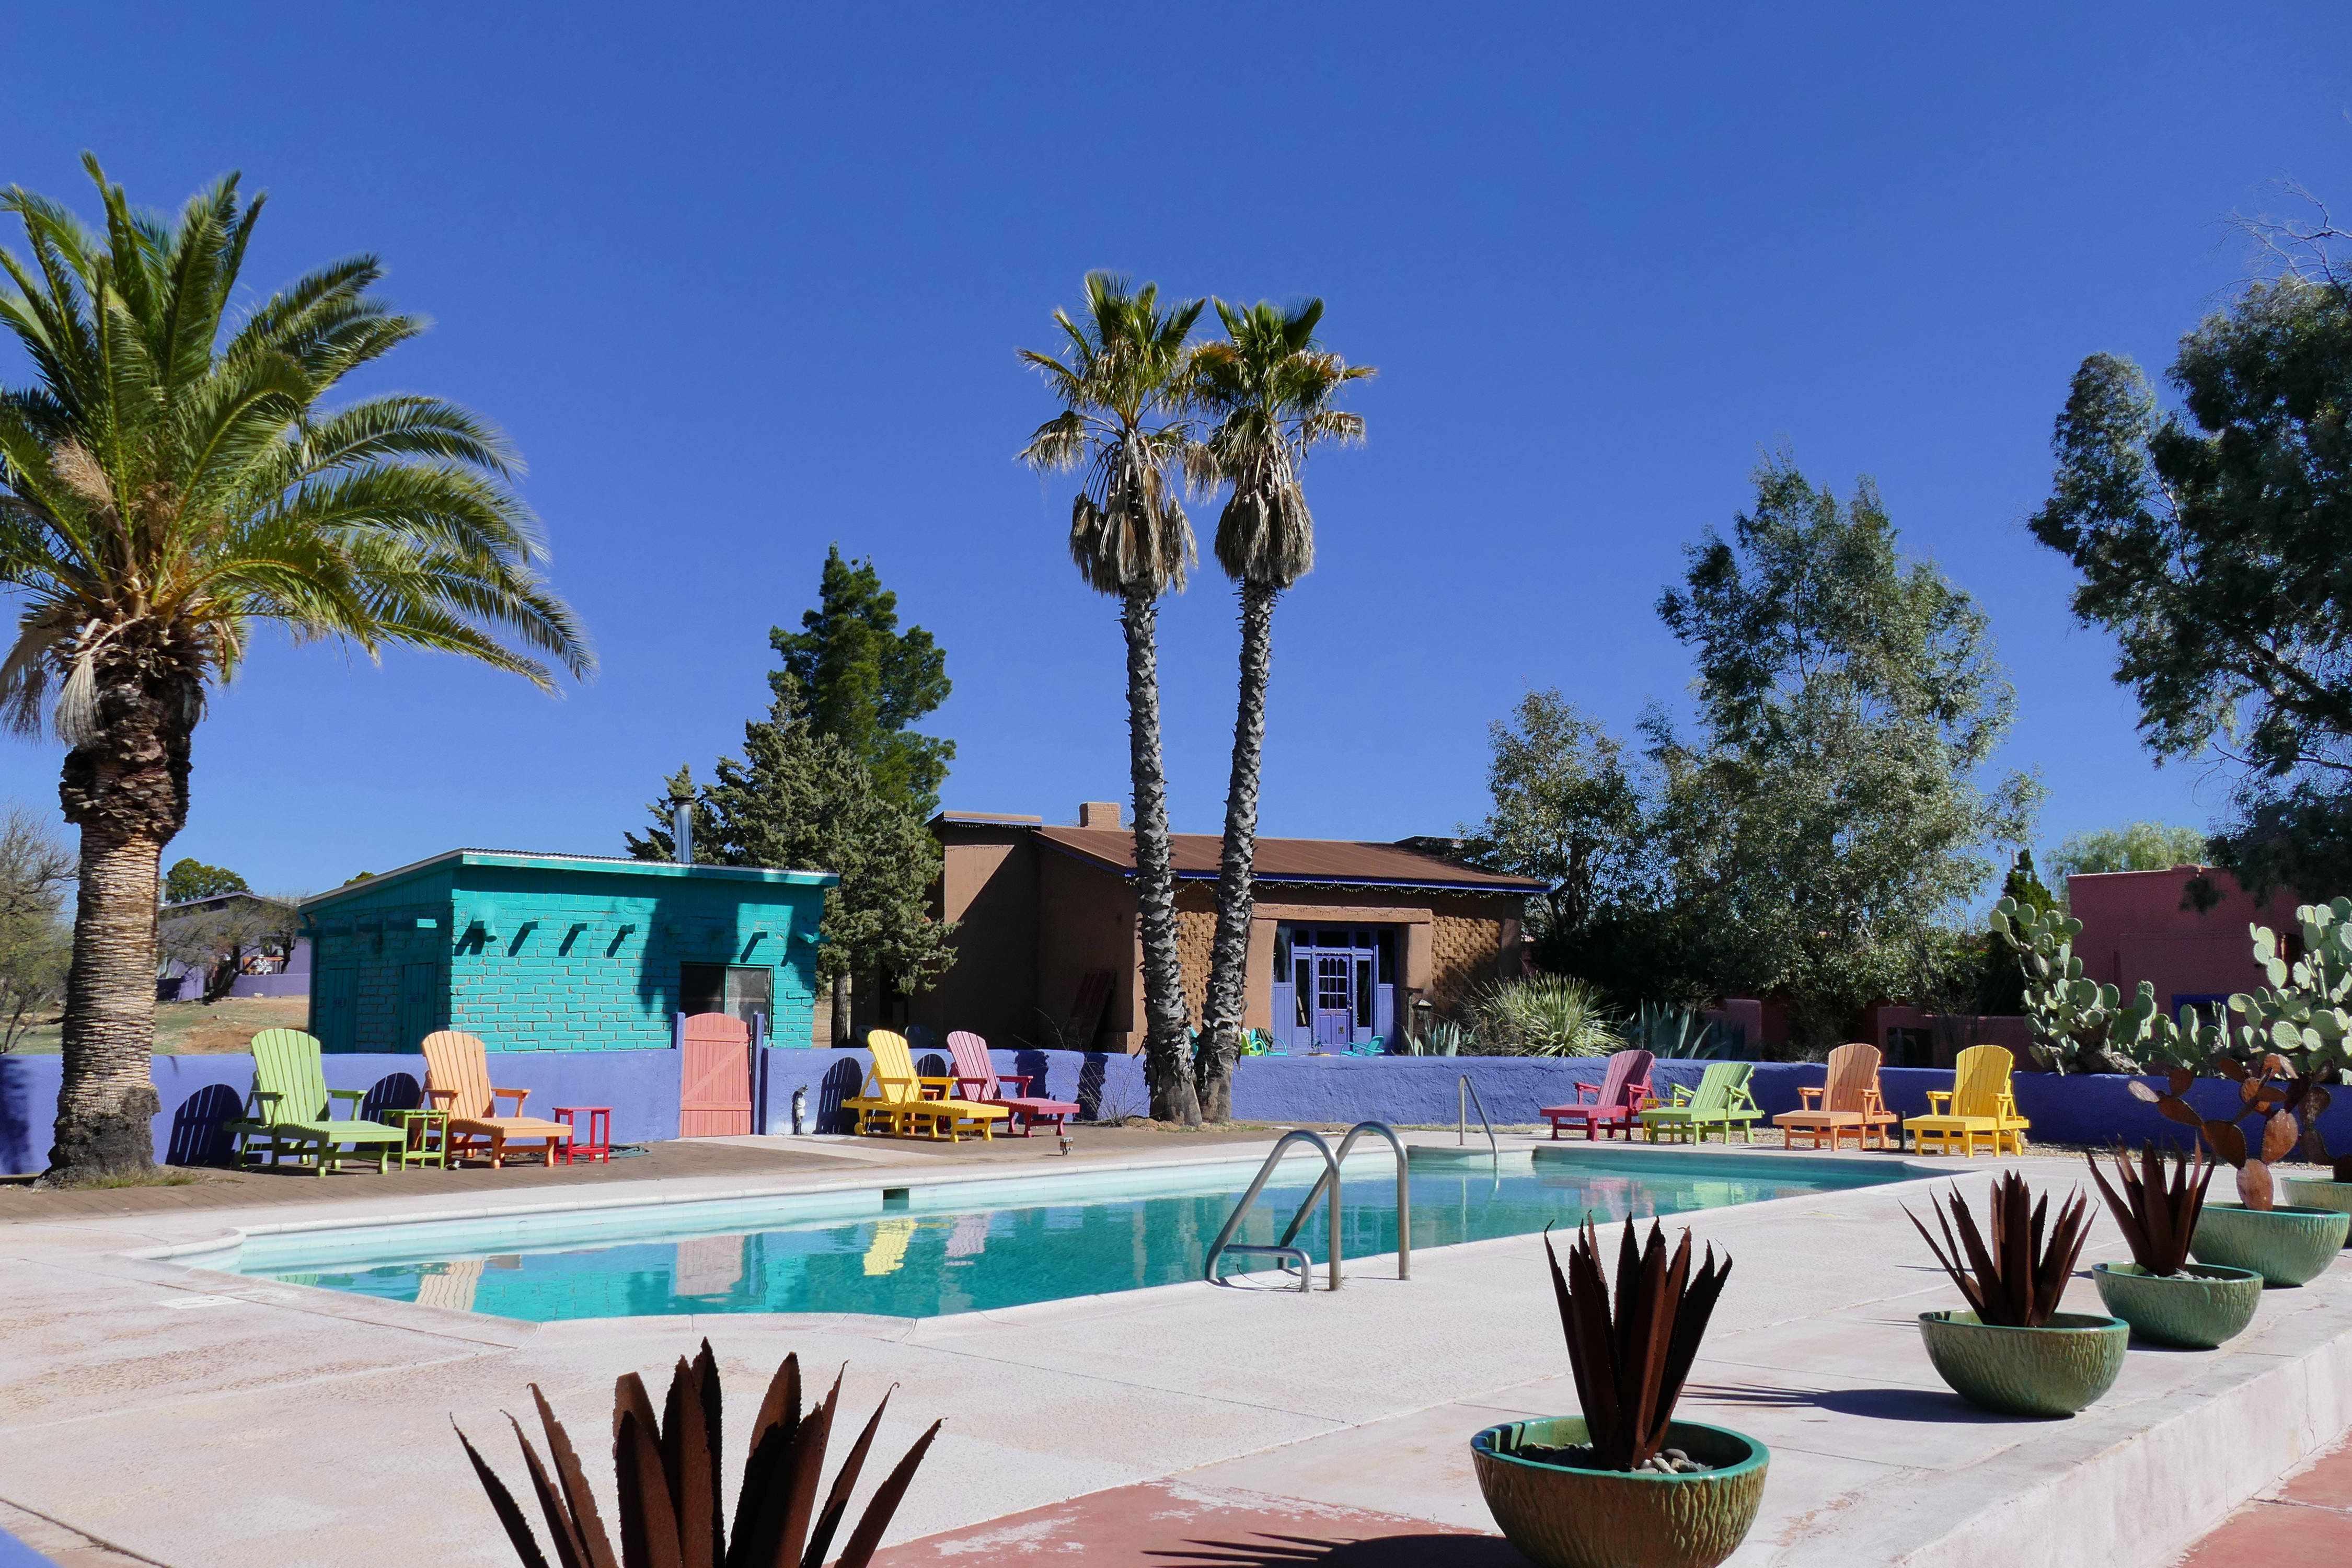 The pool at Rancho de la Osa